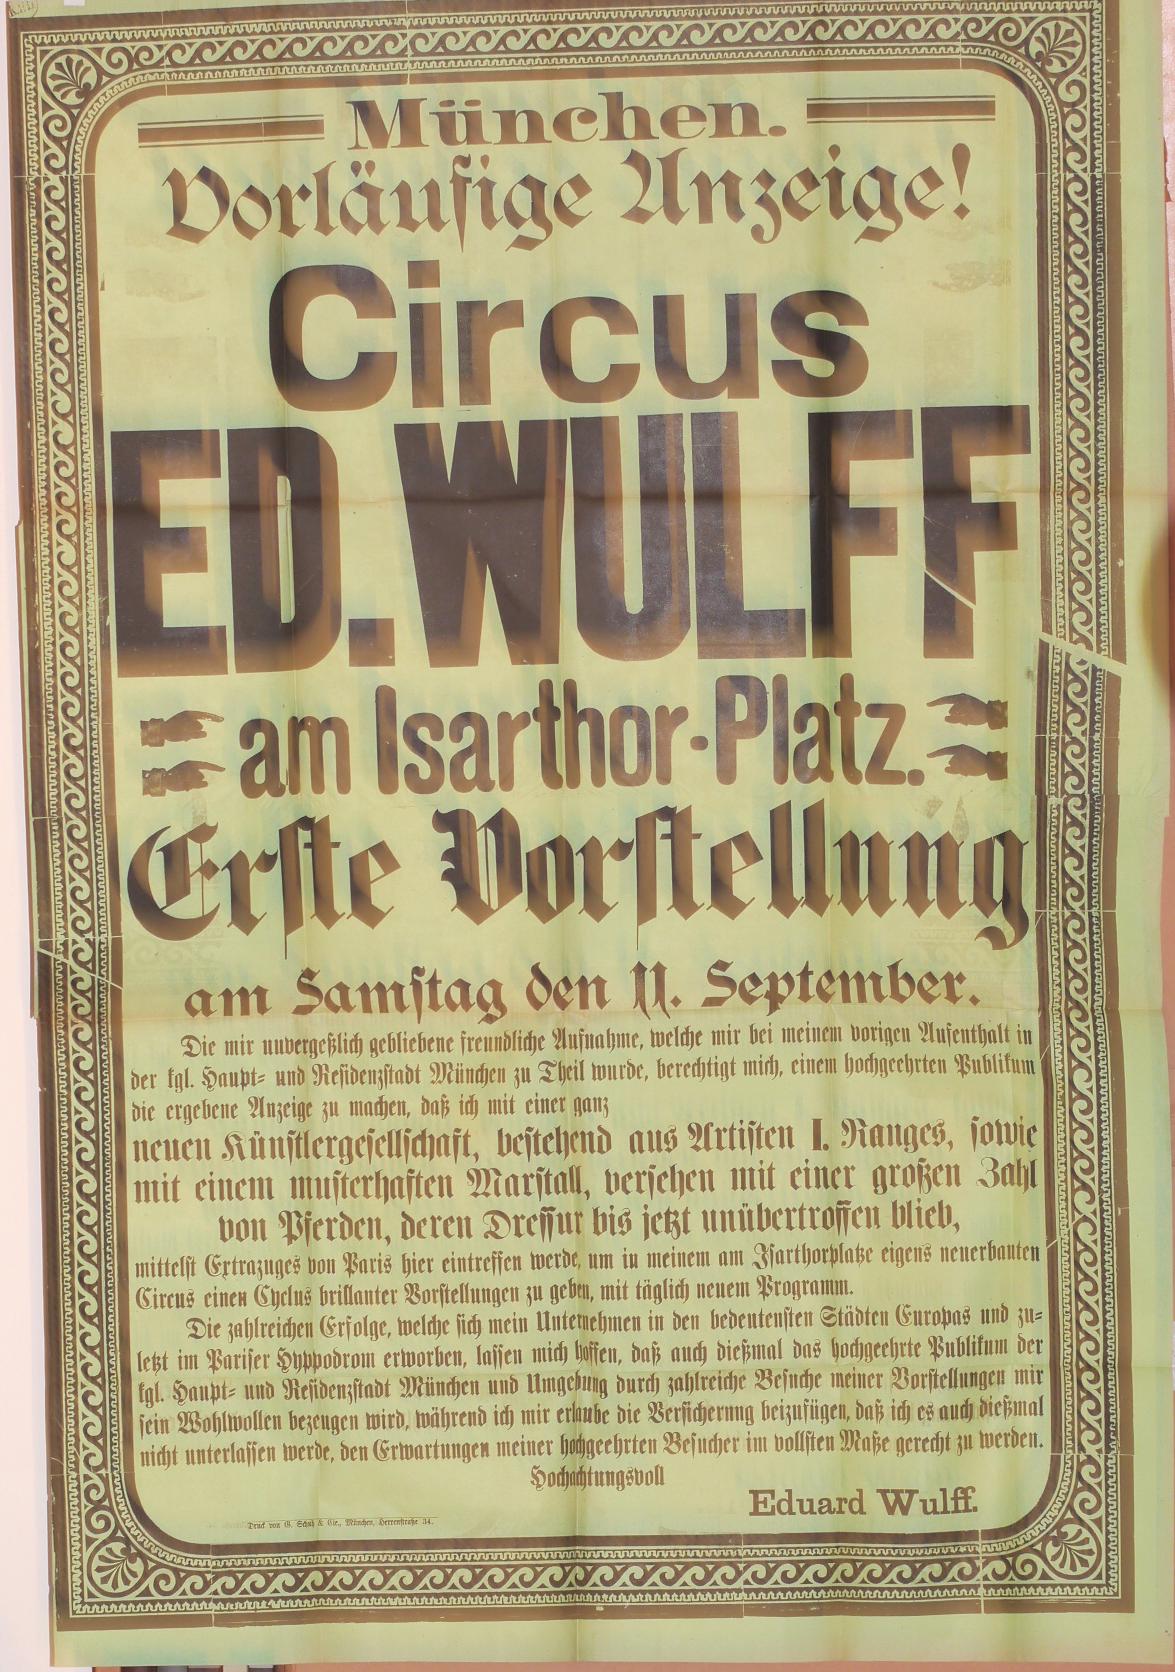  - Vorlufige Anzeige! Circus Ed. Wulff am Isarthor-Platz. Erste Vorstellung am 11. September..